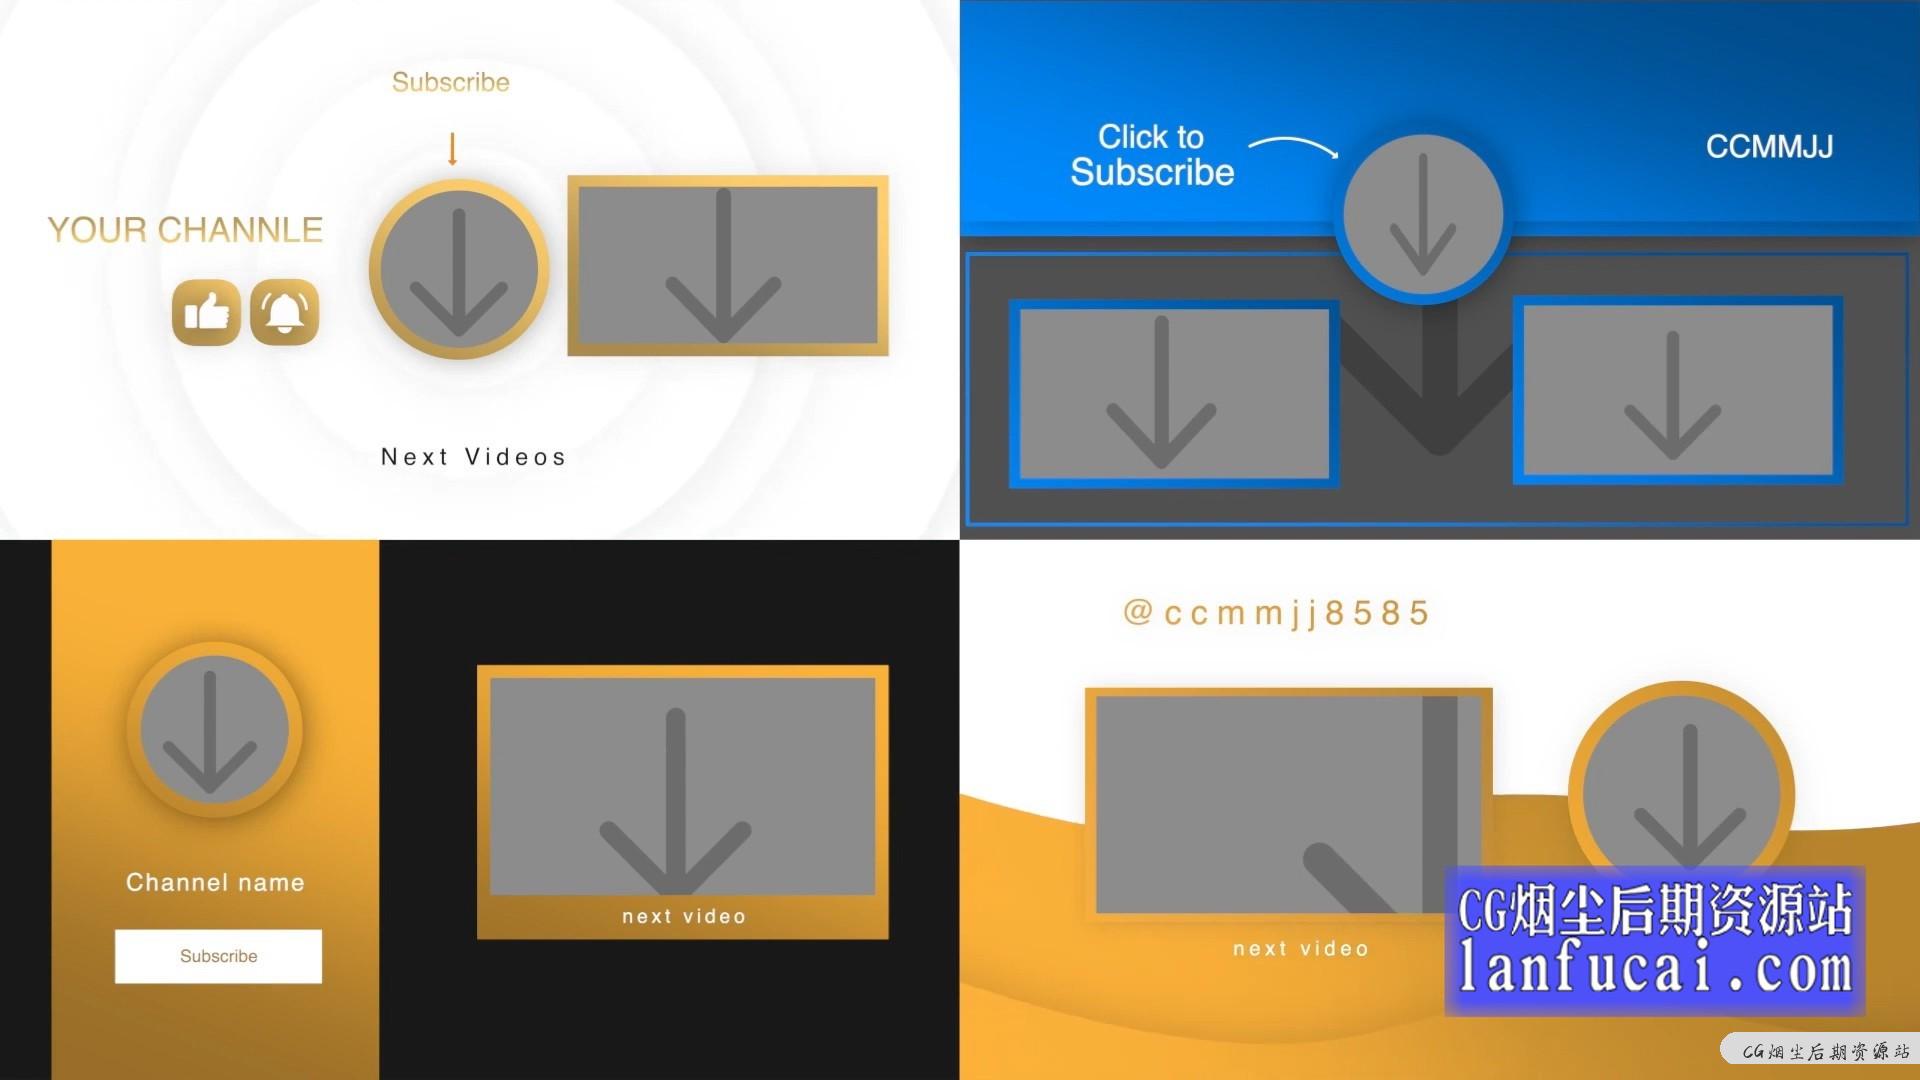 fcpx插件 自媒体短视频博主影片制作工具包 第四季 标题+动画+预告+LUTS